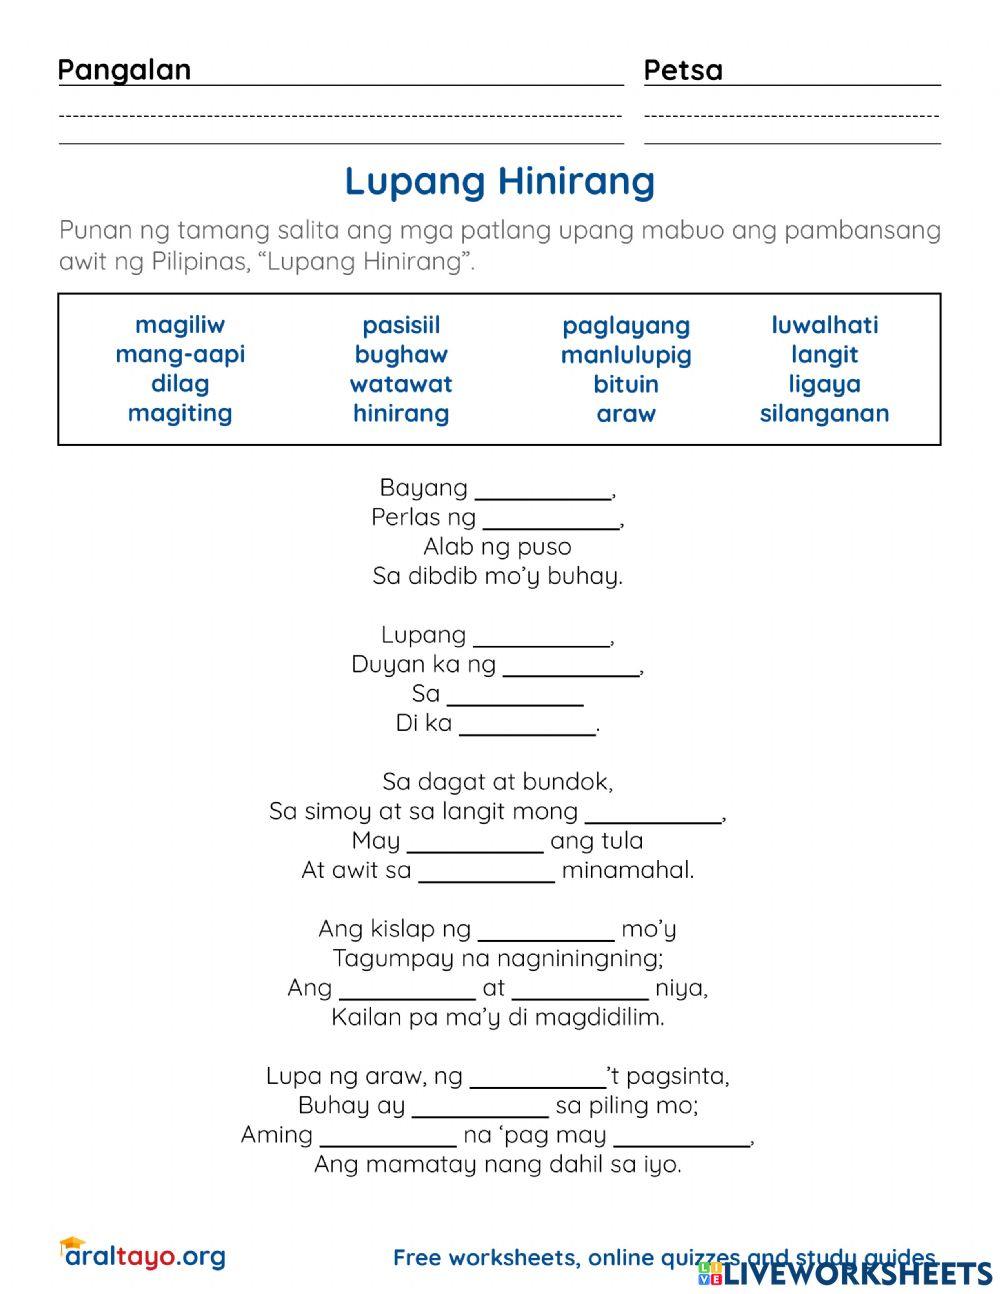 Lupang Hinirang Lyrics Worksheet